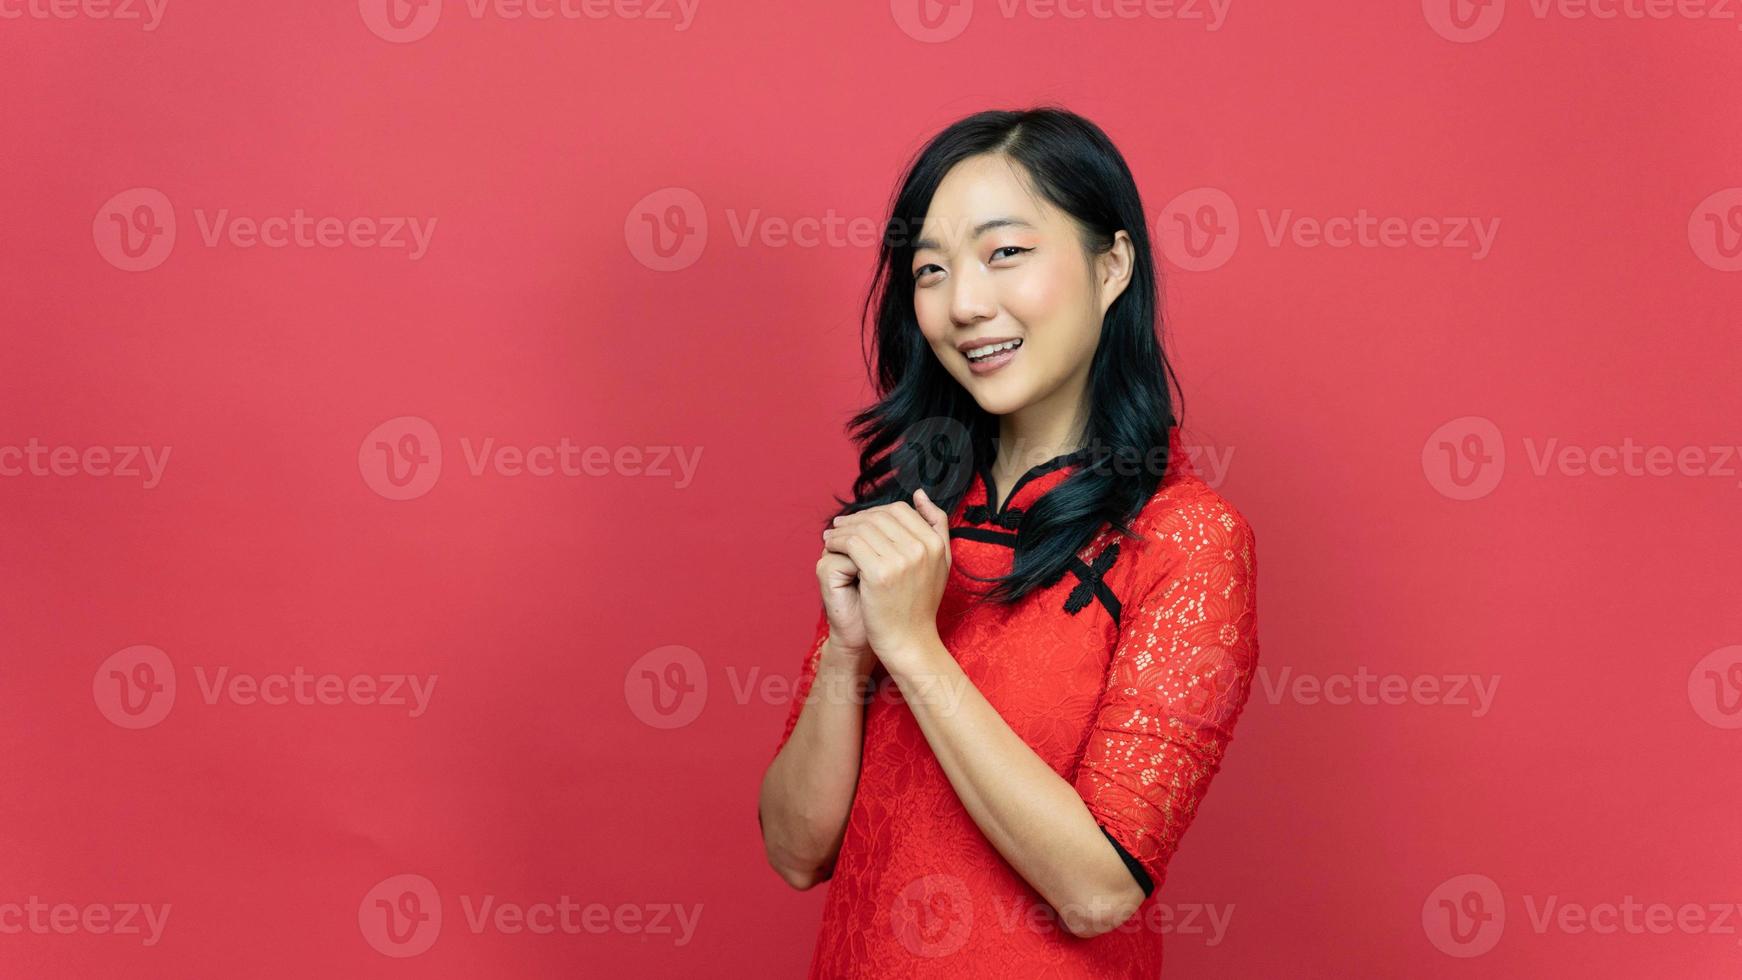 feliz año nuevo chino lunar. hermosa mujer con vestido tradicional cheongsam qipao posando orar deseo suerte aislado sobre fondo rojo. emoción sonrisa foto